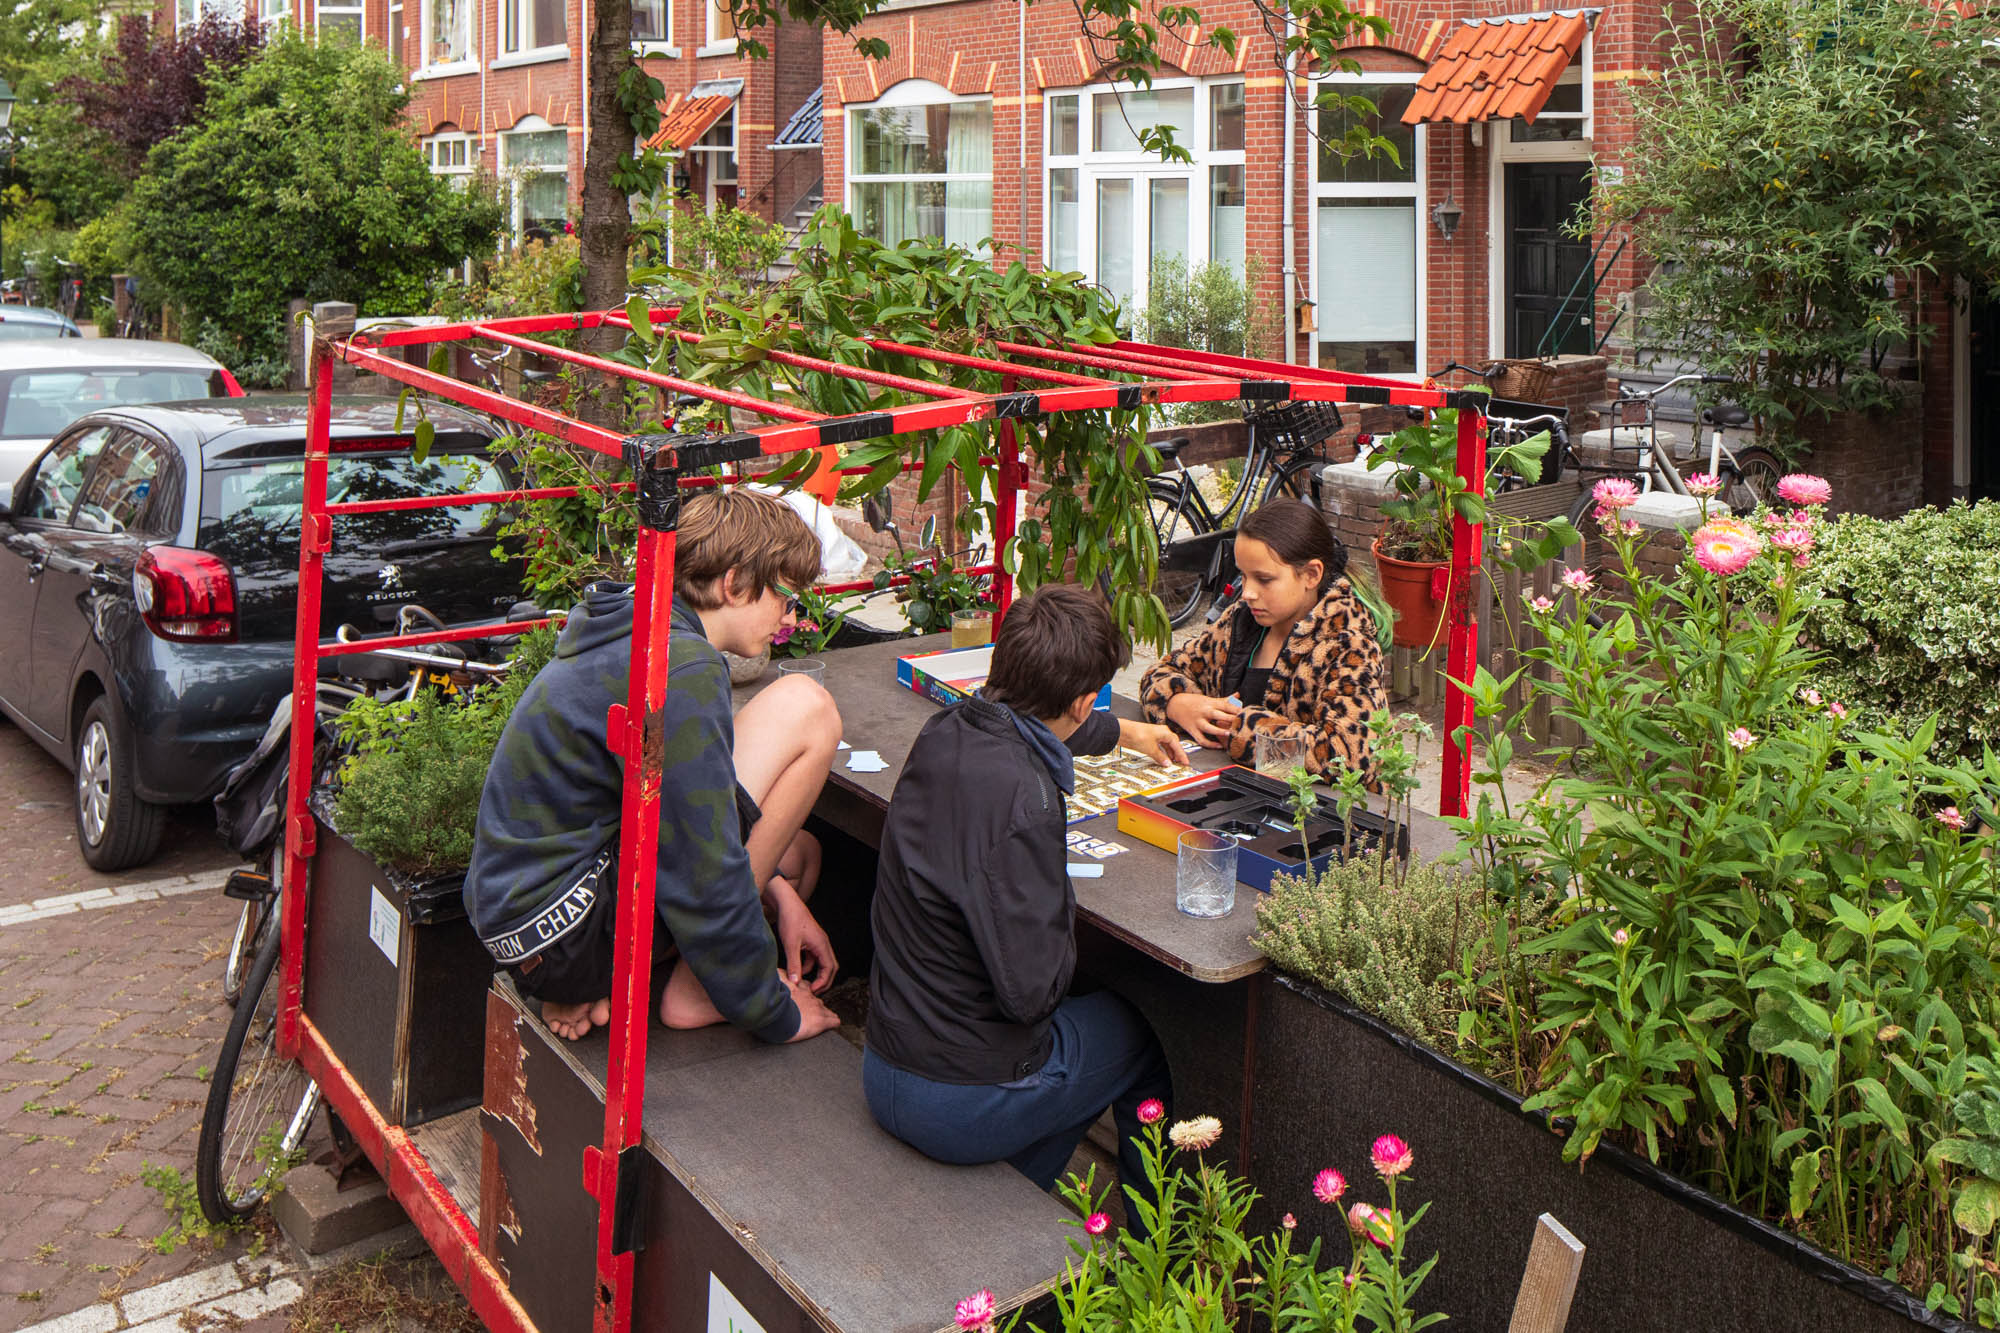 Weiland Pedagogie progressief Nominaties bekend Haagse Openbare ruimte Prijs (HOP) stadmakerseditie -  Platform Stad